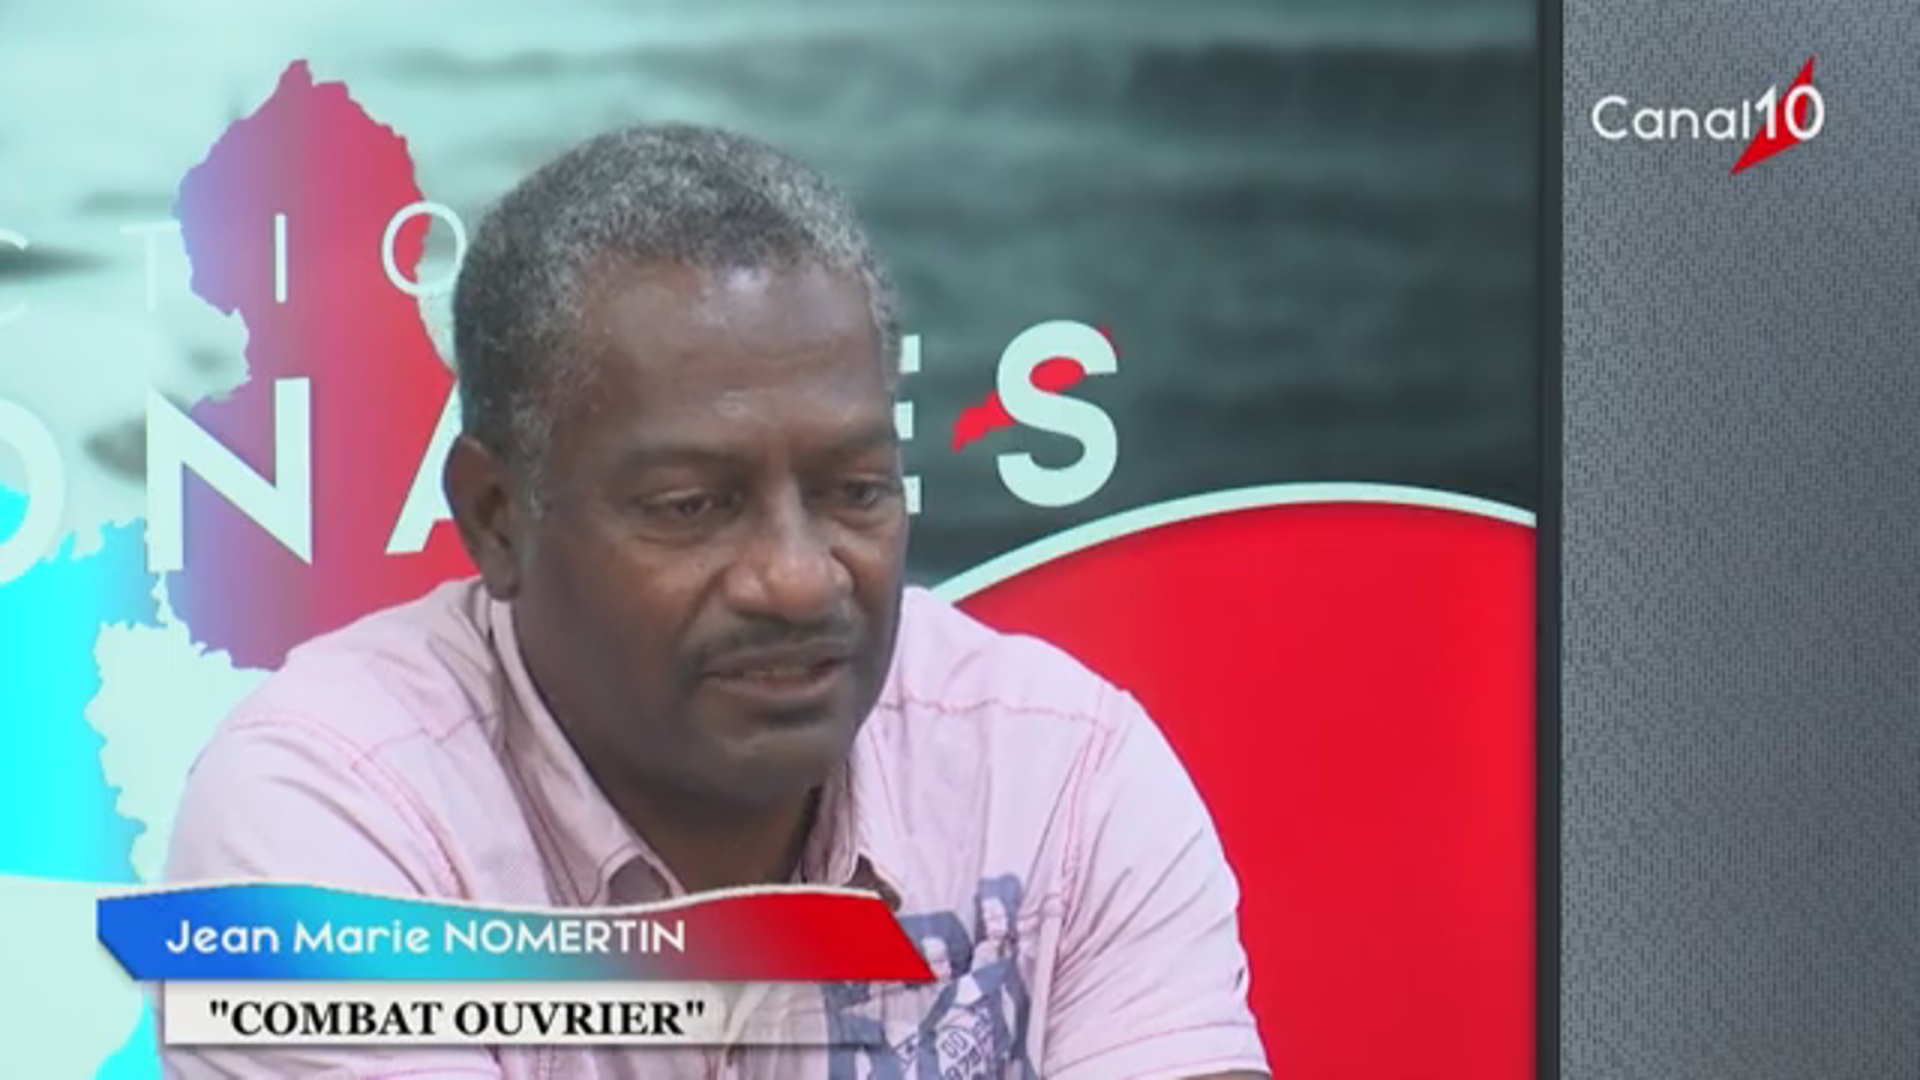 [Vidéo]Onews Guadeloupe. Élections Régionales Liste Combat ouvrier avec Jean Marie NOMERTIN invitée de Canal 10